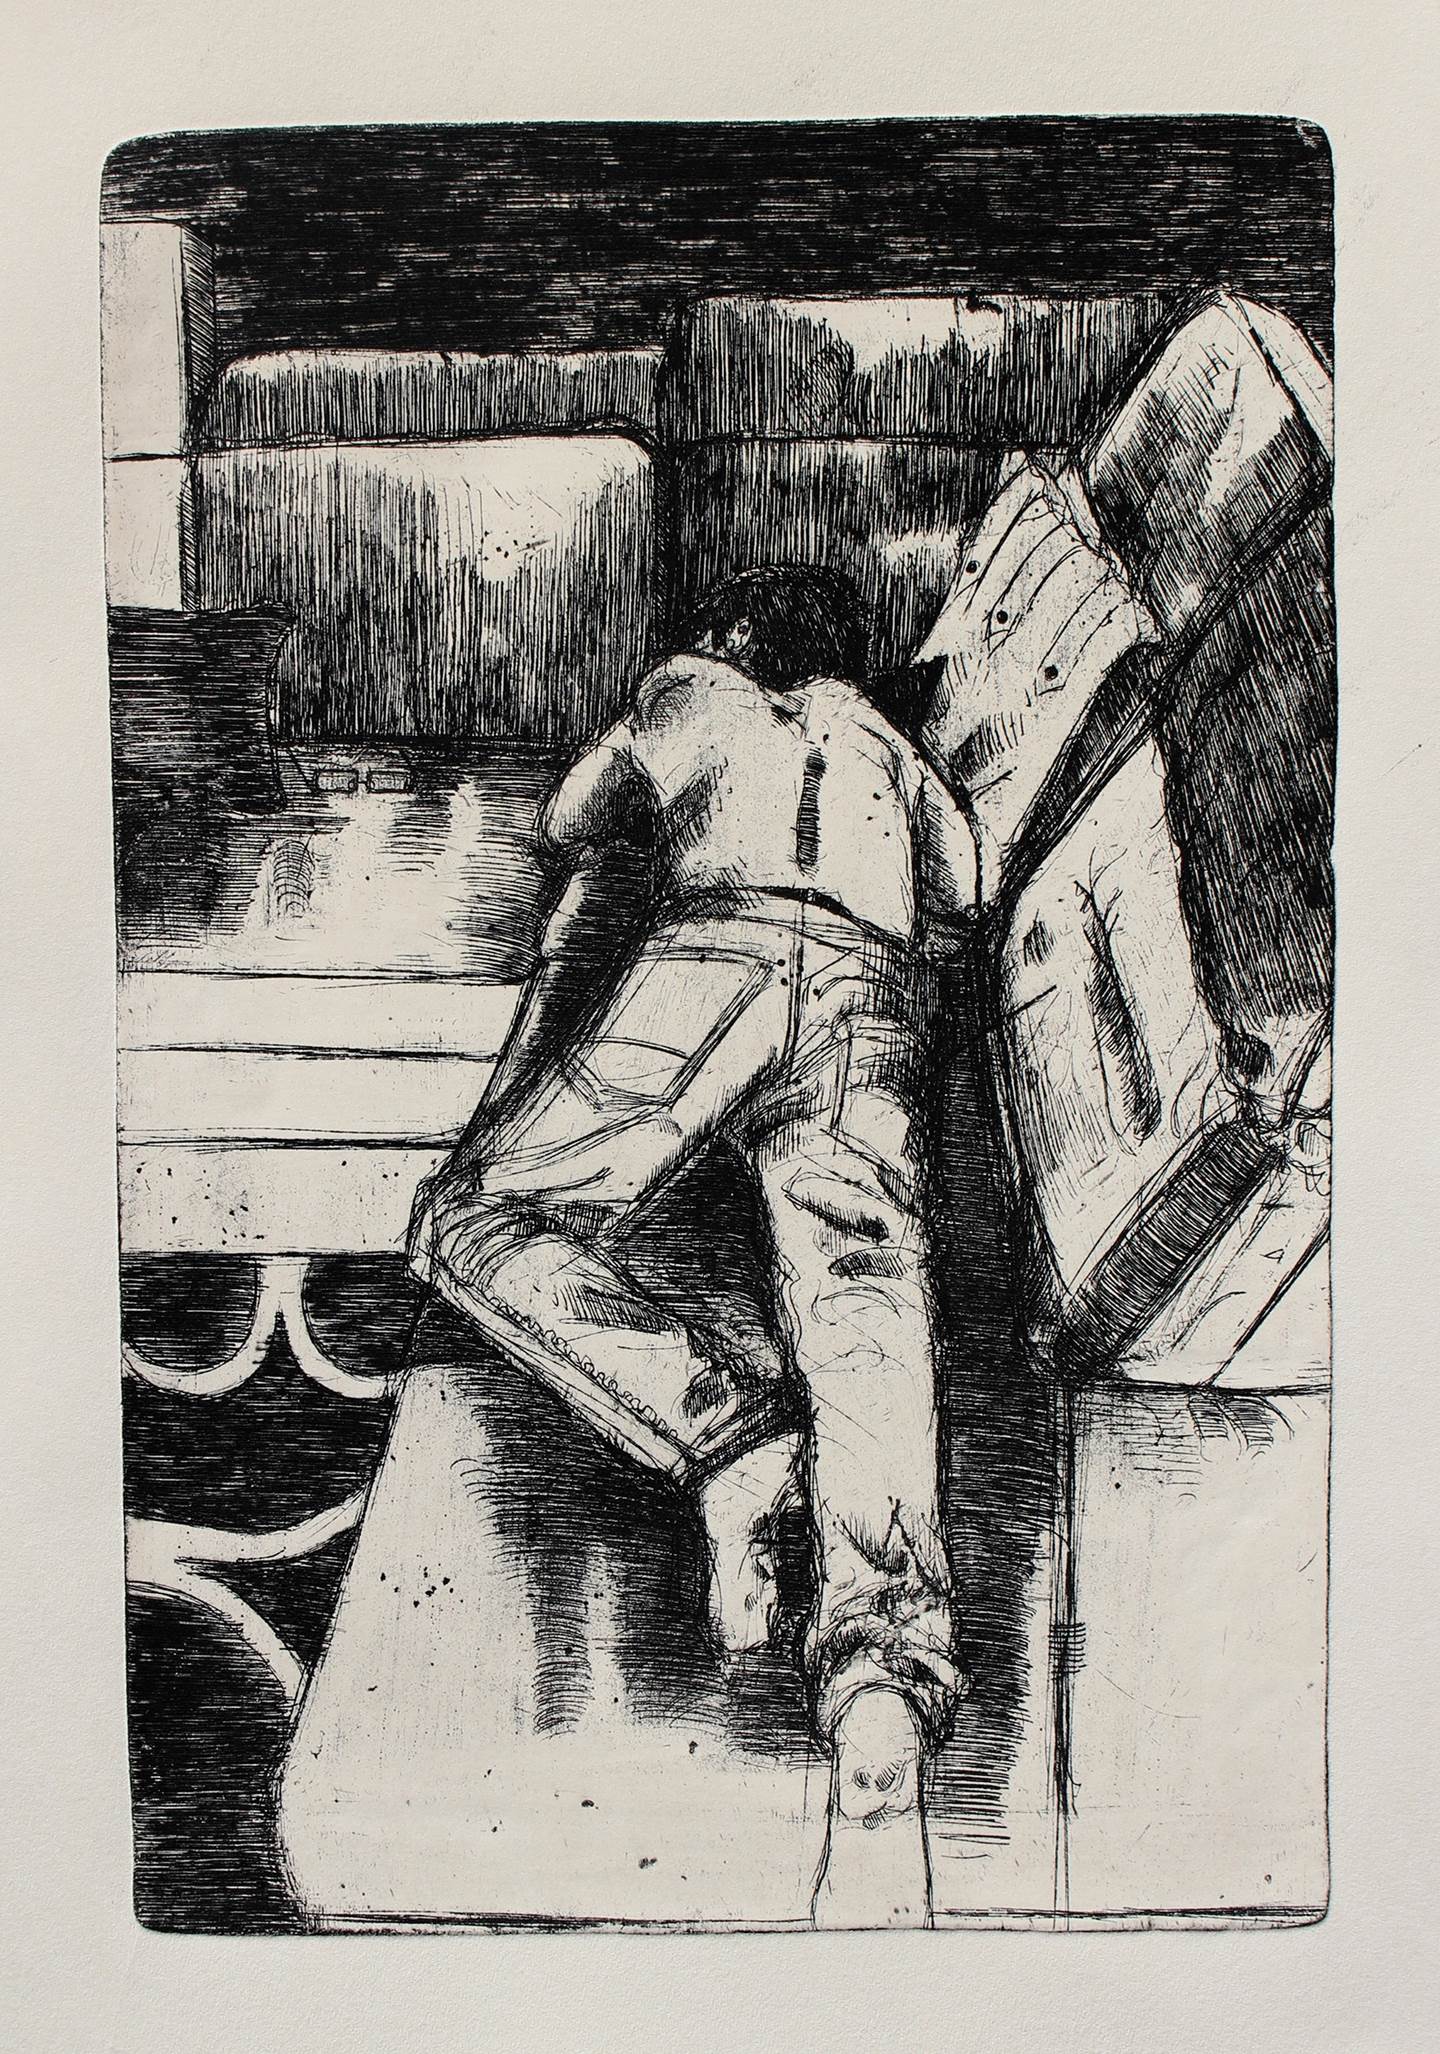 Ele dorme, original Human Figure Etching Drawing and Illustration by Flor de Ceres Rabaçal